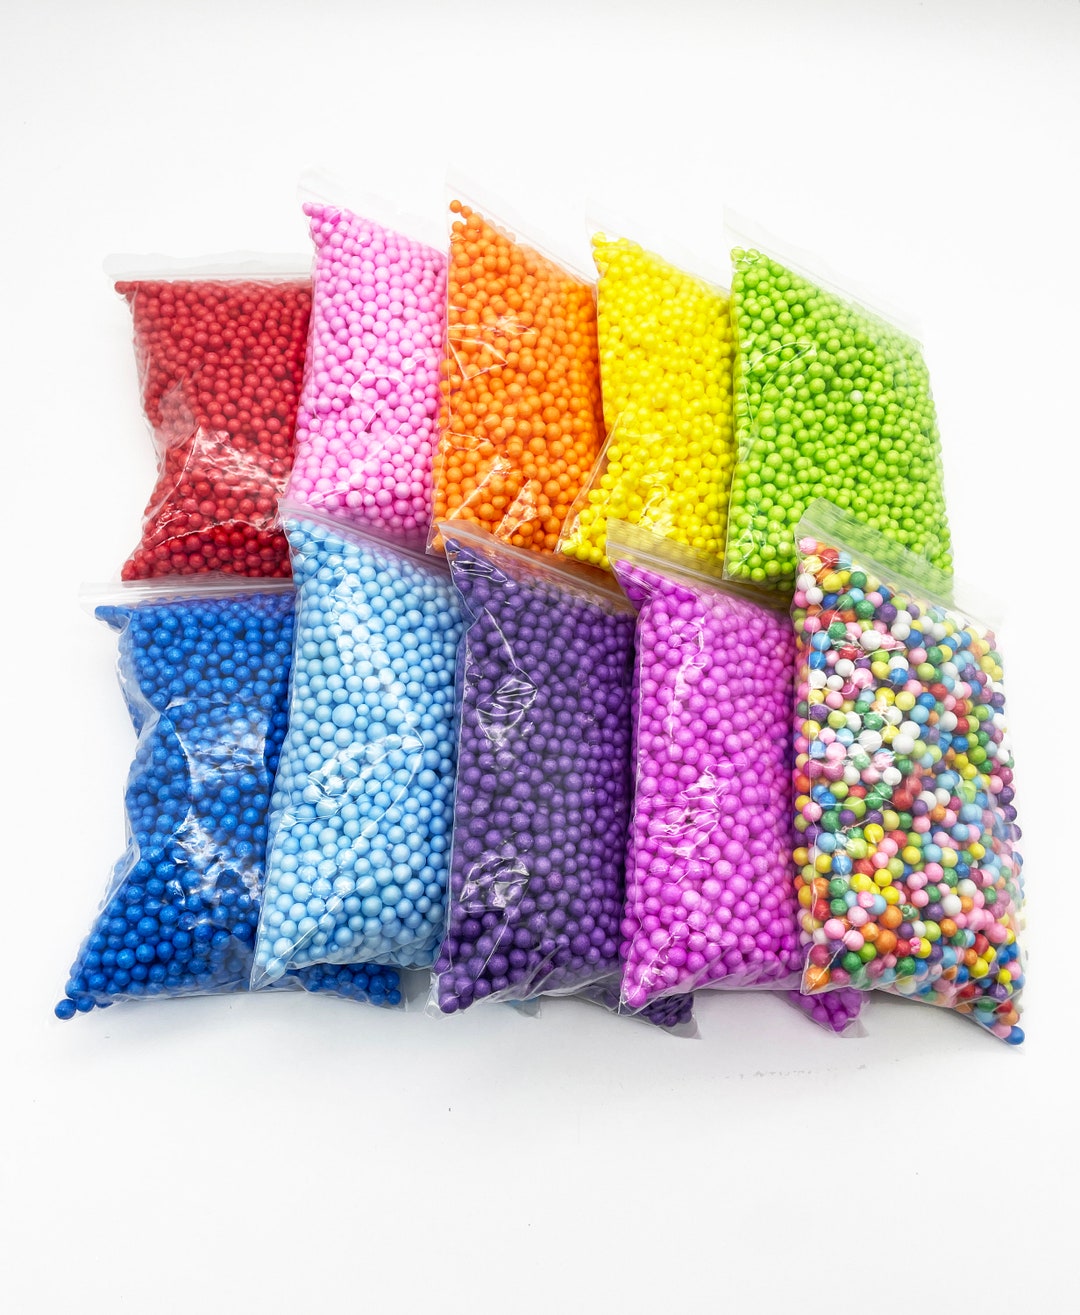 120000 Vibrant Slime Foam Beads